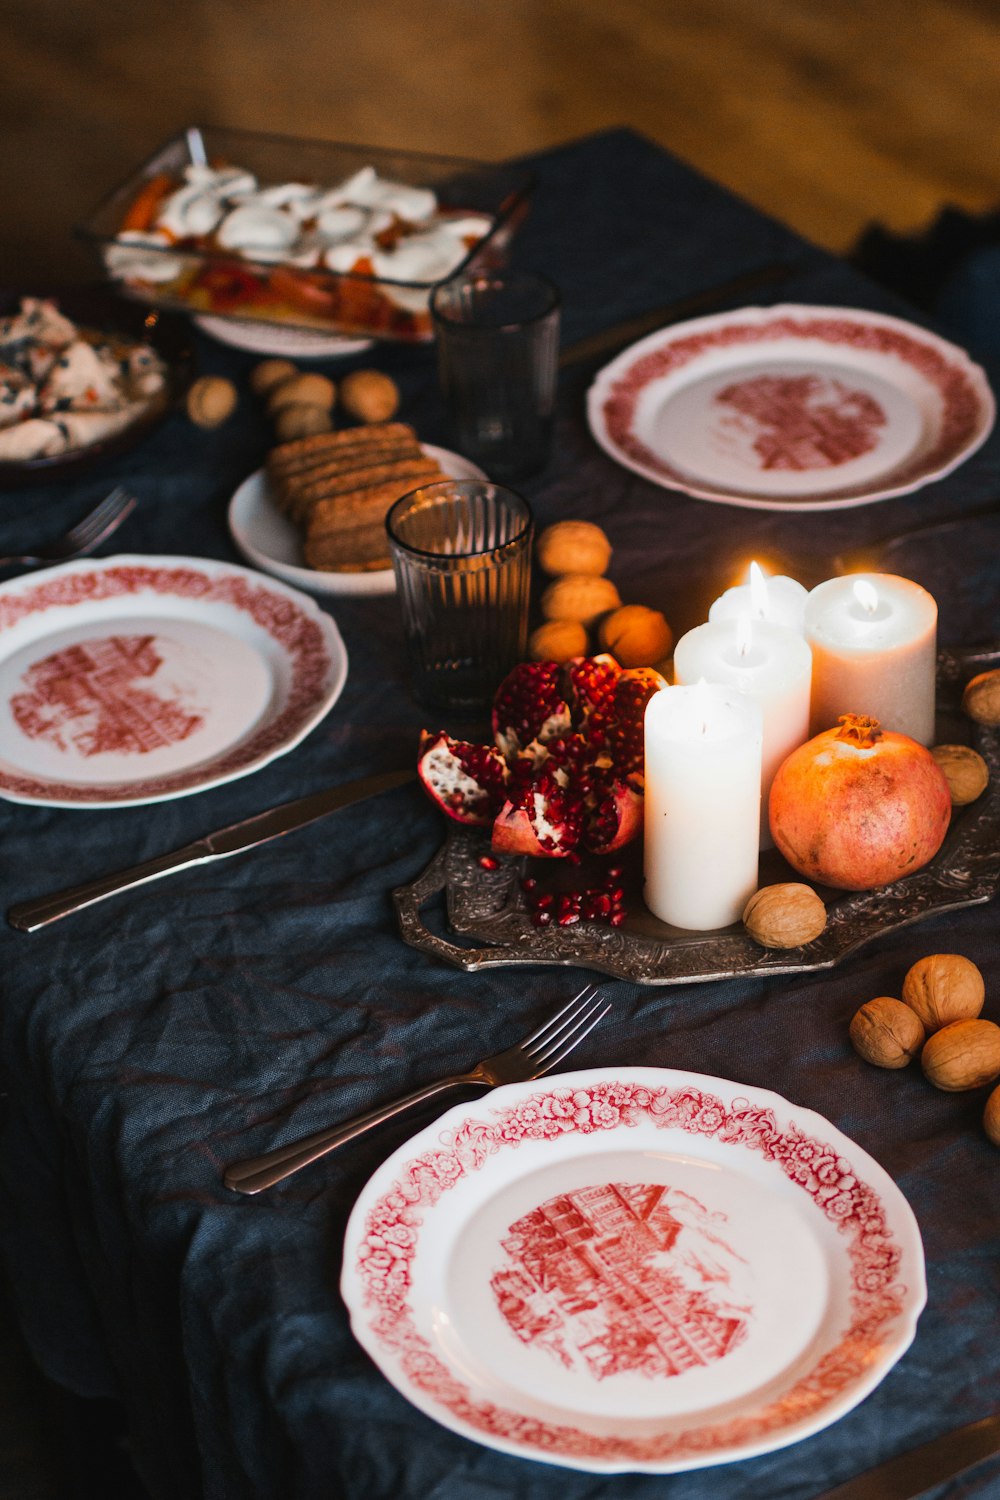 Piatto in ceramica bianca e rossa con forchetta in acciaio inox accanto a biscotti marroni e candele bianche